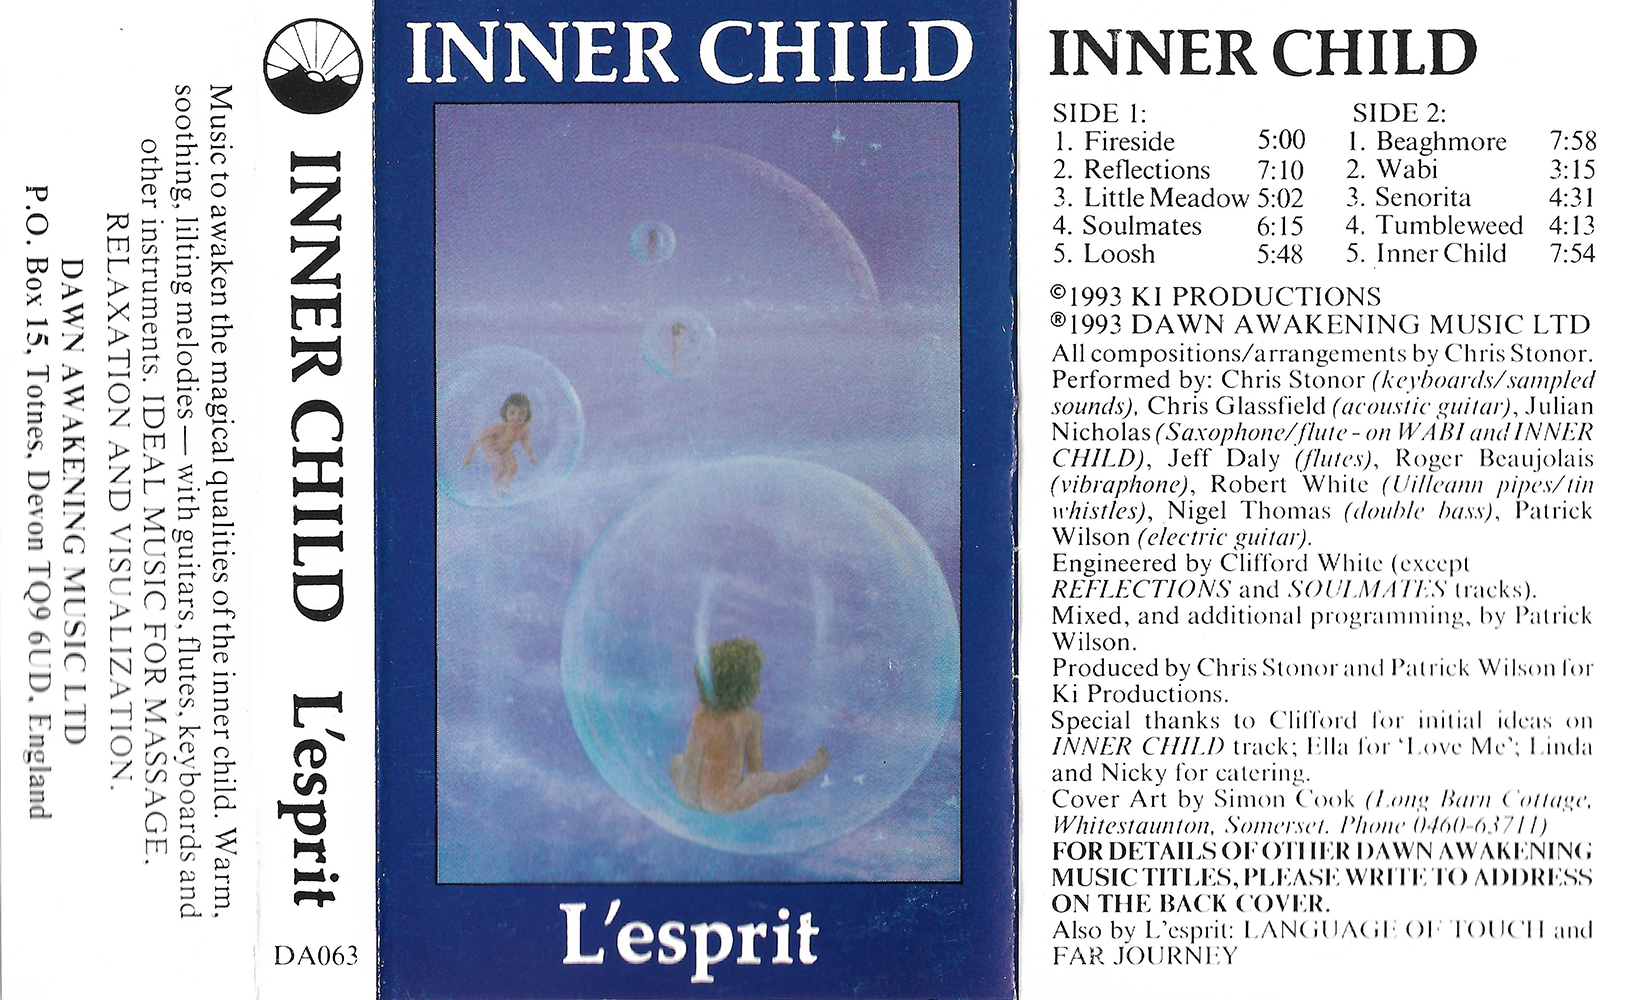 Inner Child by L'esprit